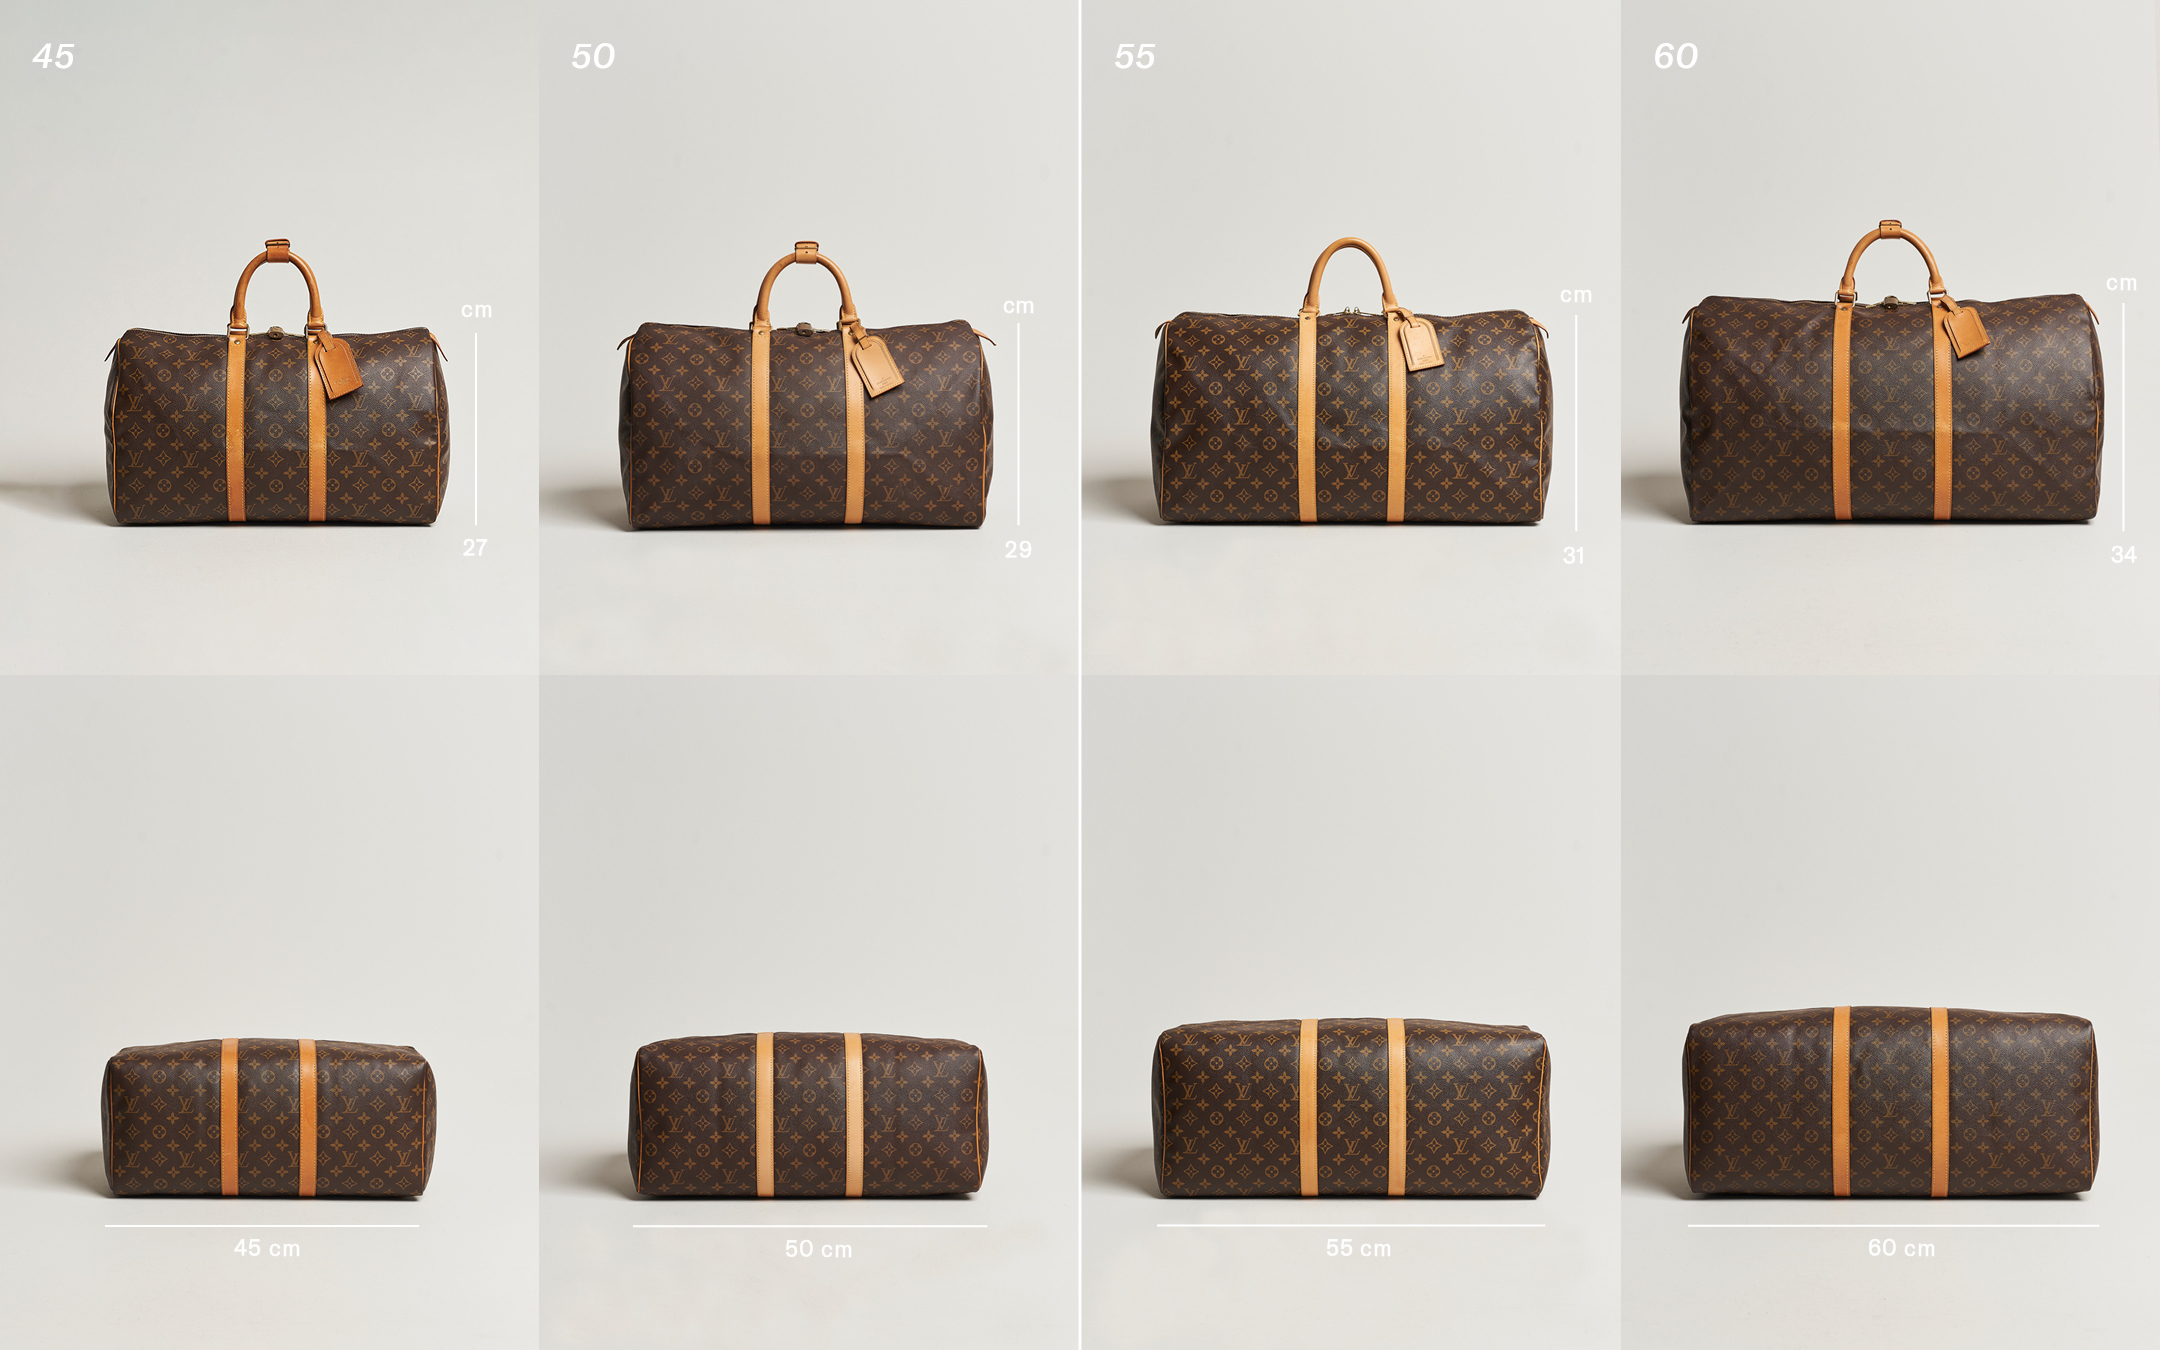 Louis Vuitton Keepall Size Comparison